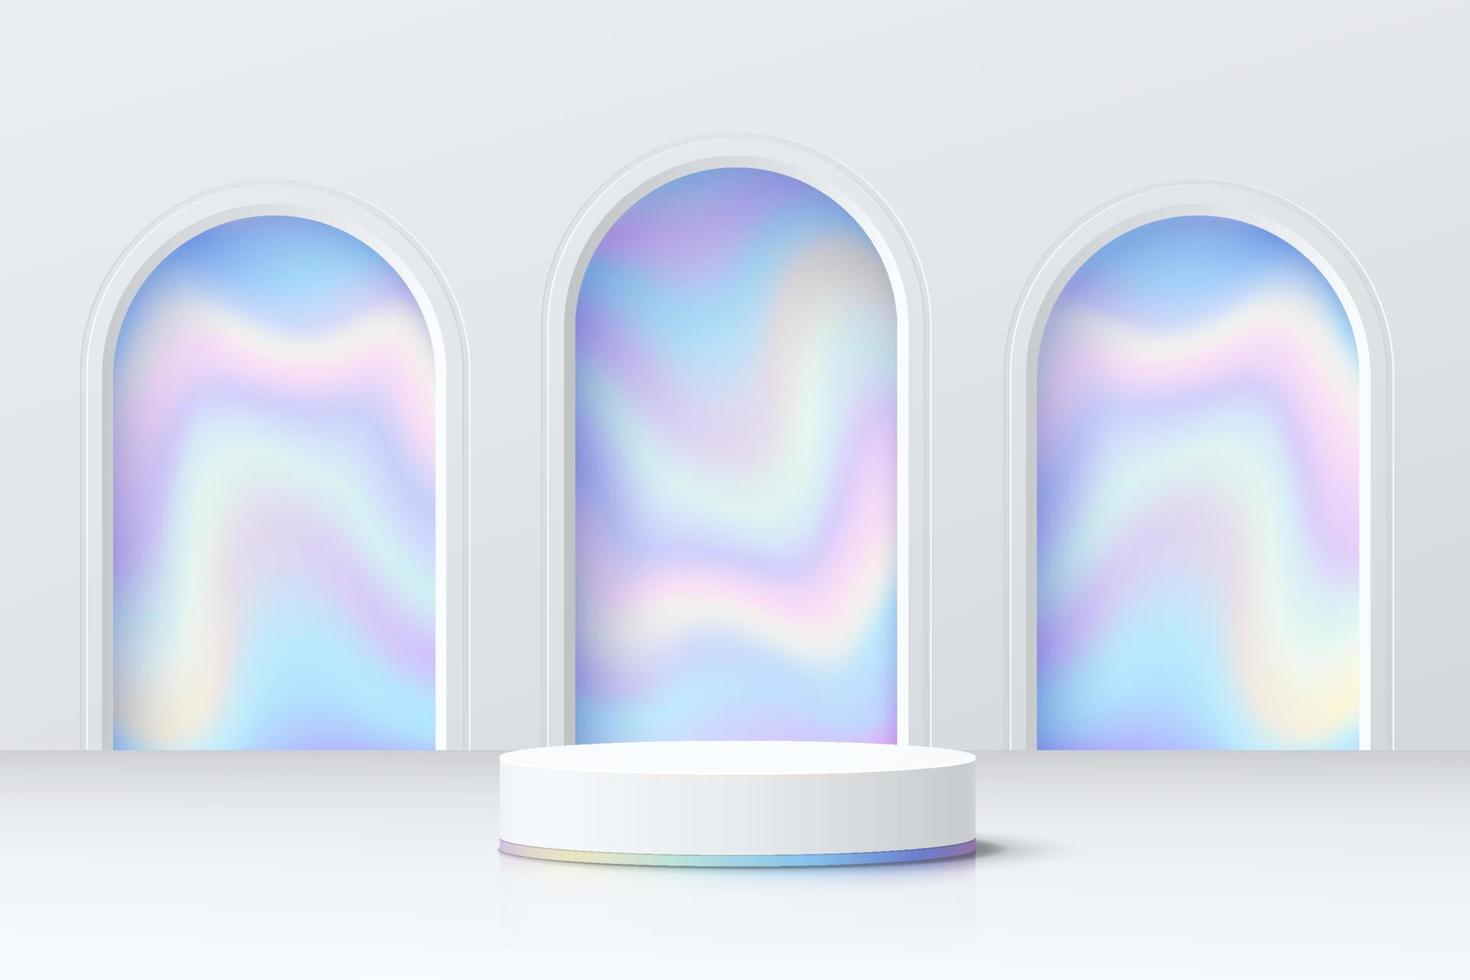 abstrakt 3d-rum med realistisk vit cylinderpiedestalpodium och blått hologram i bågformsfönster. minimal scen för produktpresentation. vektor geometrisk plattform. scen för showcase.